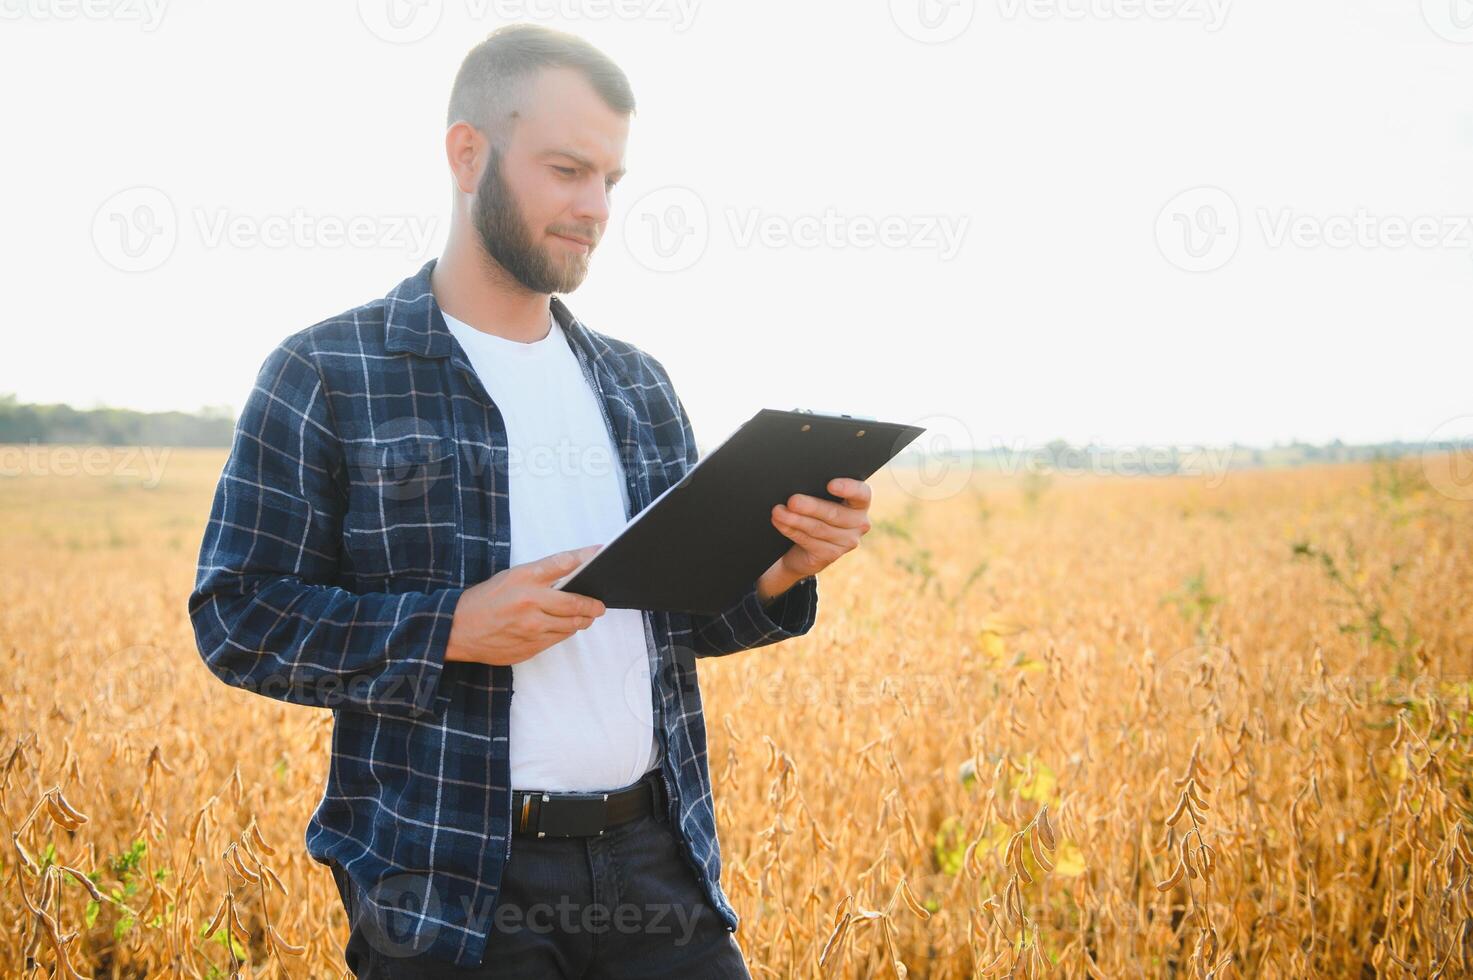 jordbrukare agronom i sojaböna fält kontroll gröda. organisk mat produktion och odling foto